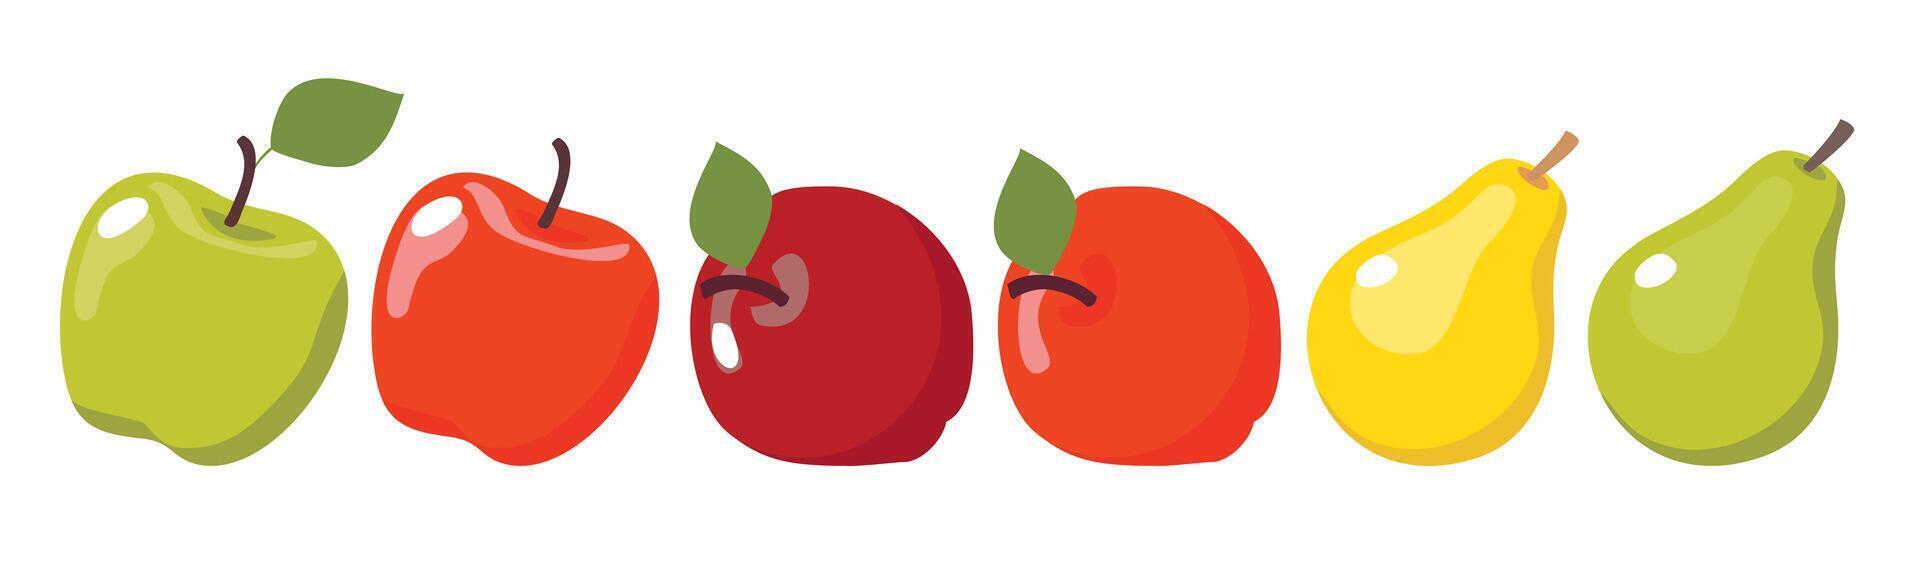 uma conjunto do ilustrações do peras e maçãs do vários formas e cores. vetor clipart.